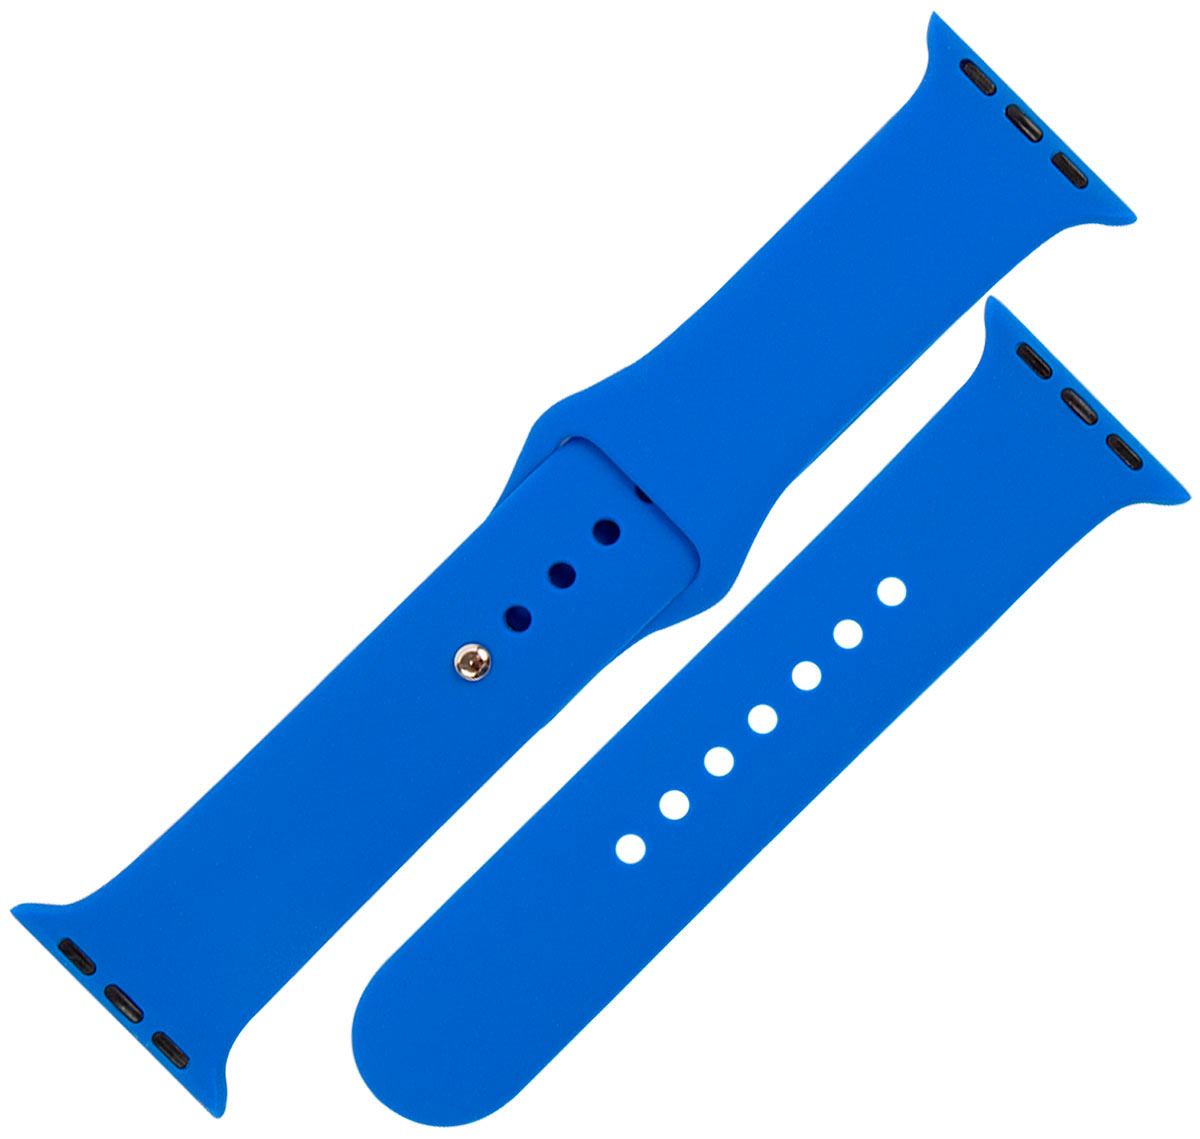 Ремешок силиконовый mObility для Apple watch - 38-40 мм (S3/S4/S5 SE/S6), синий ремешок силиконовый mobility для apple watch 38 40 мм s3 s4 s5 se s6 синий